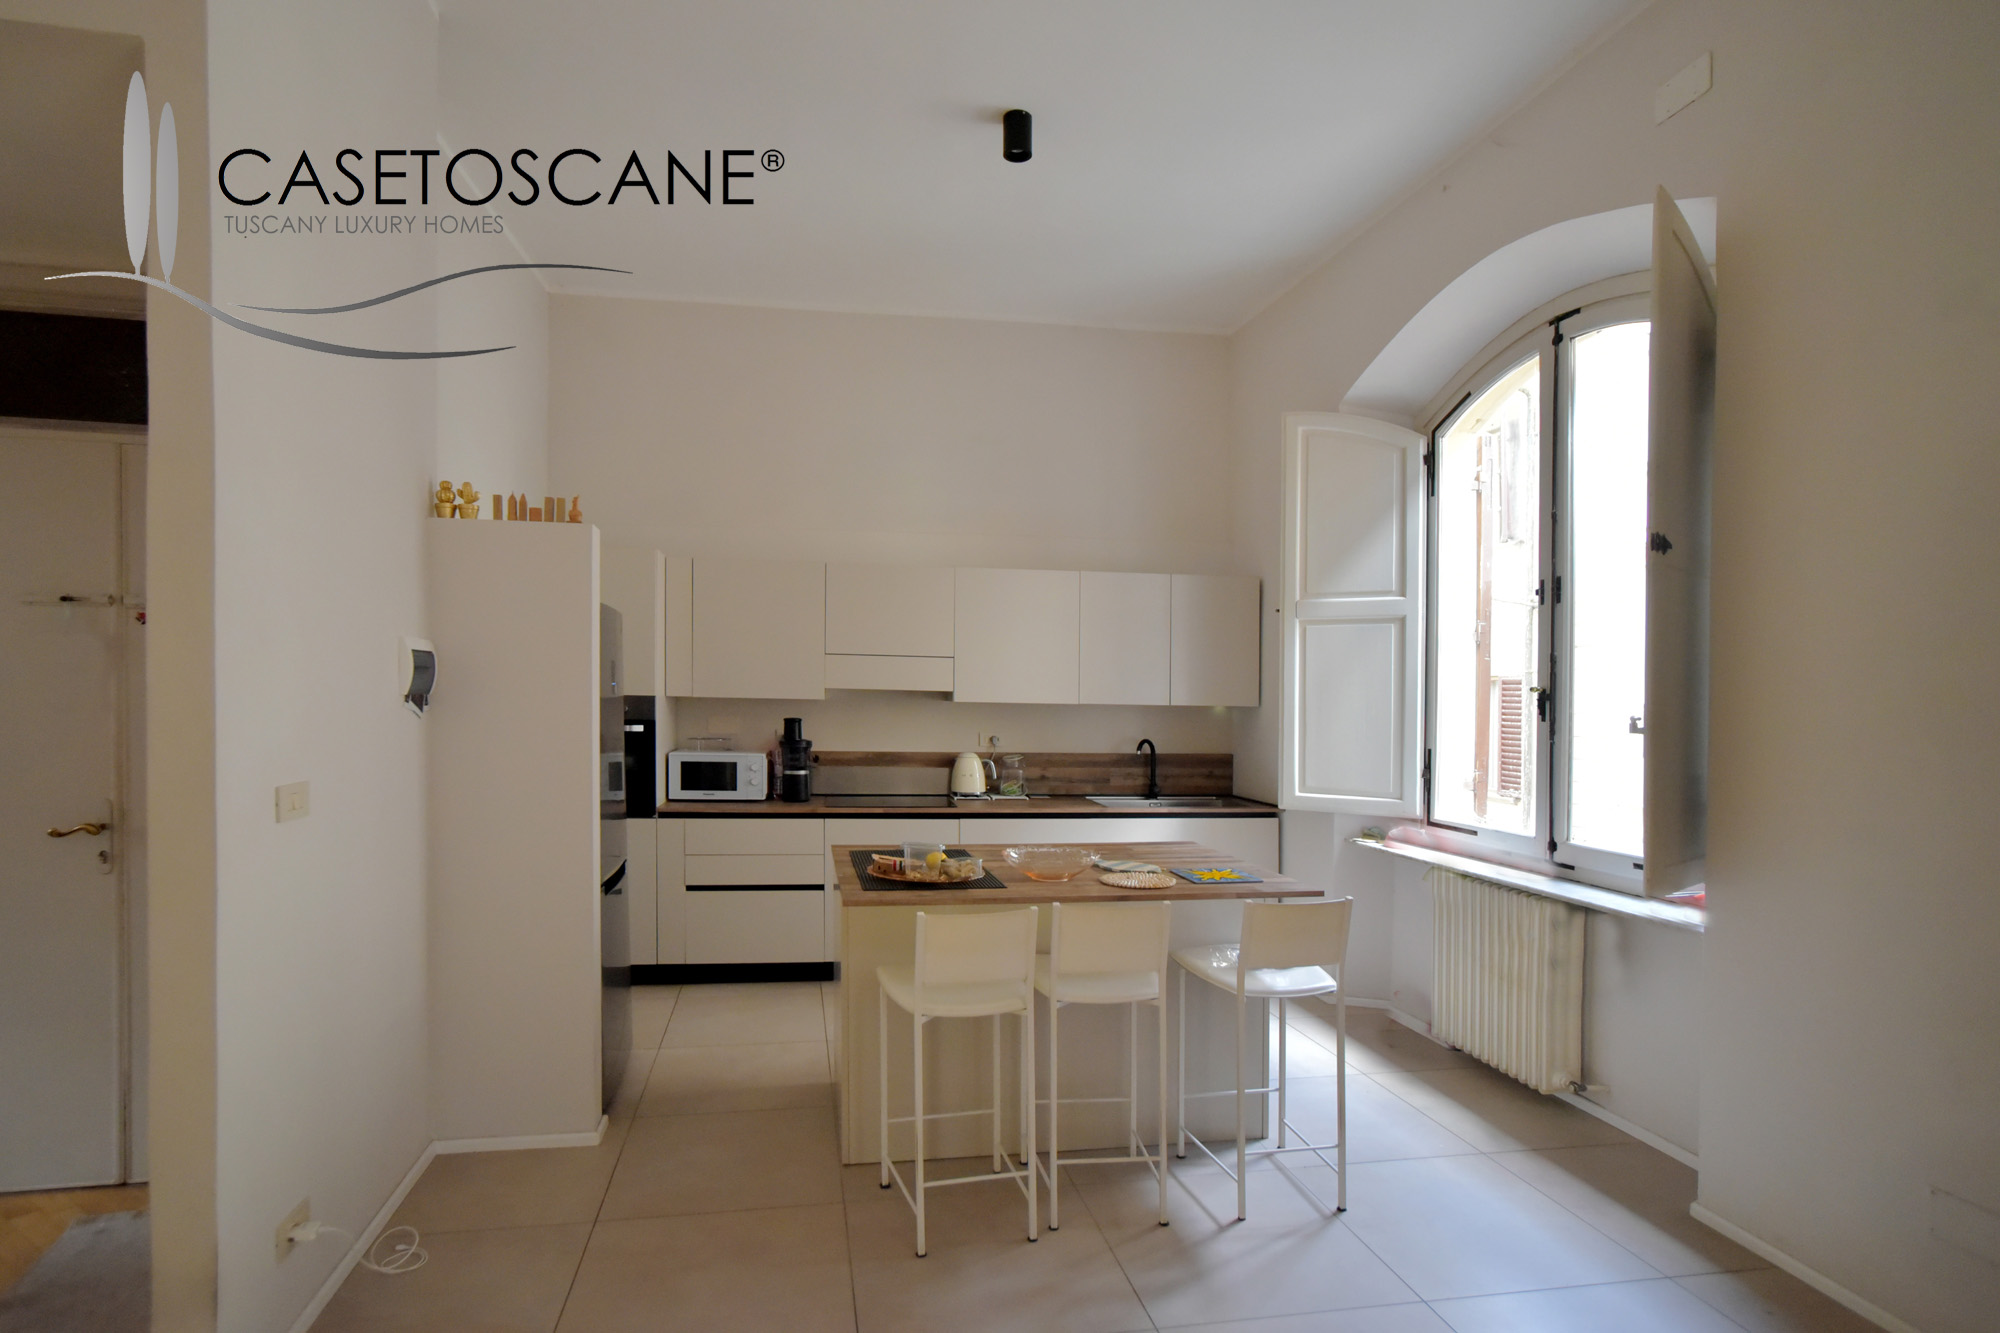 A760 - Ampio appartamento recentemente ristrutturato di mq.130 con cortile privato di mq.40 in palazzo di storico nel centro storico di Arezzo.